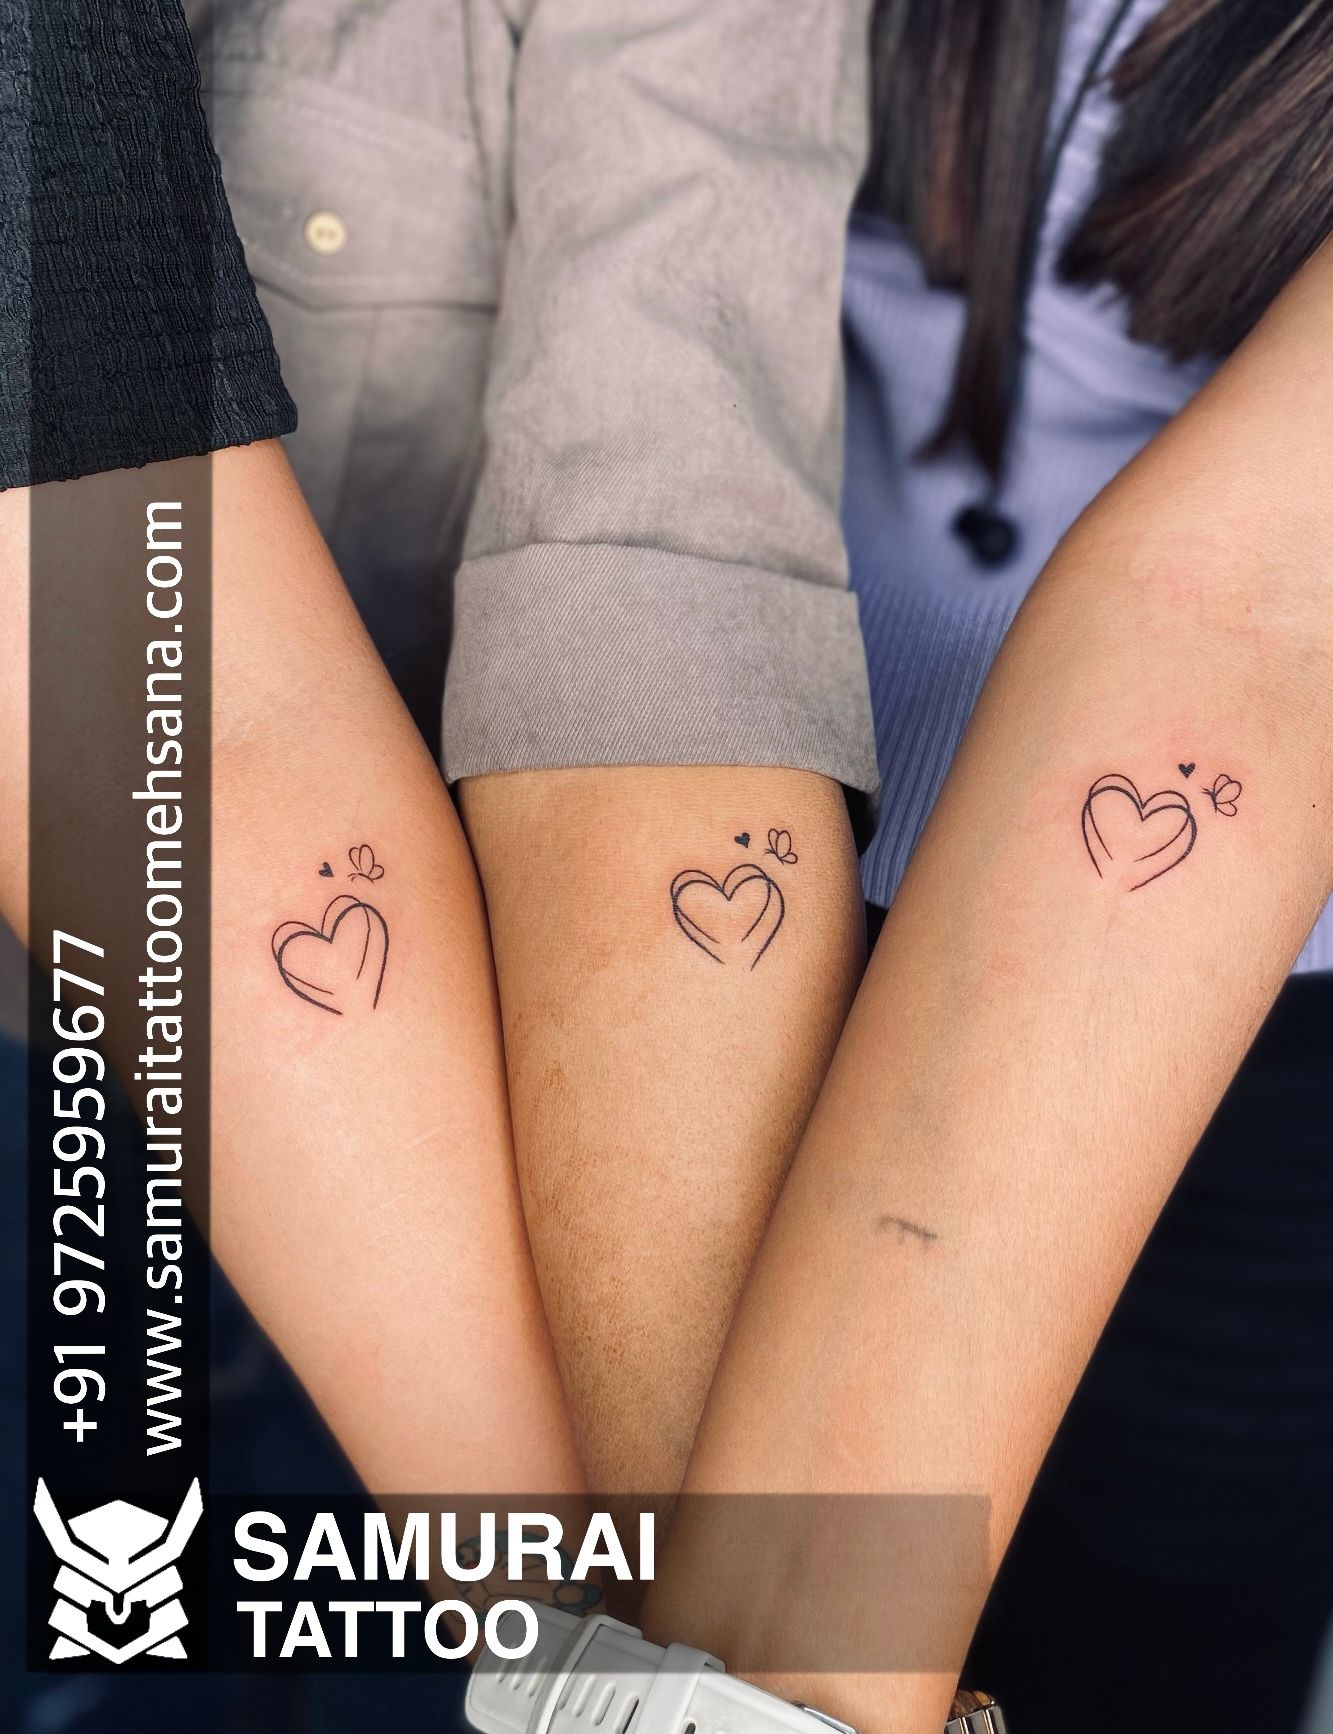 Mahi Mahi fish Tattoo | Upper arm tattoos designs, Picture tattoos, Upper  arm tattoos